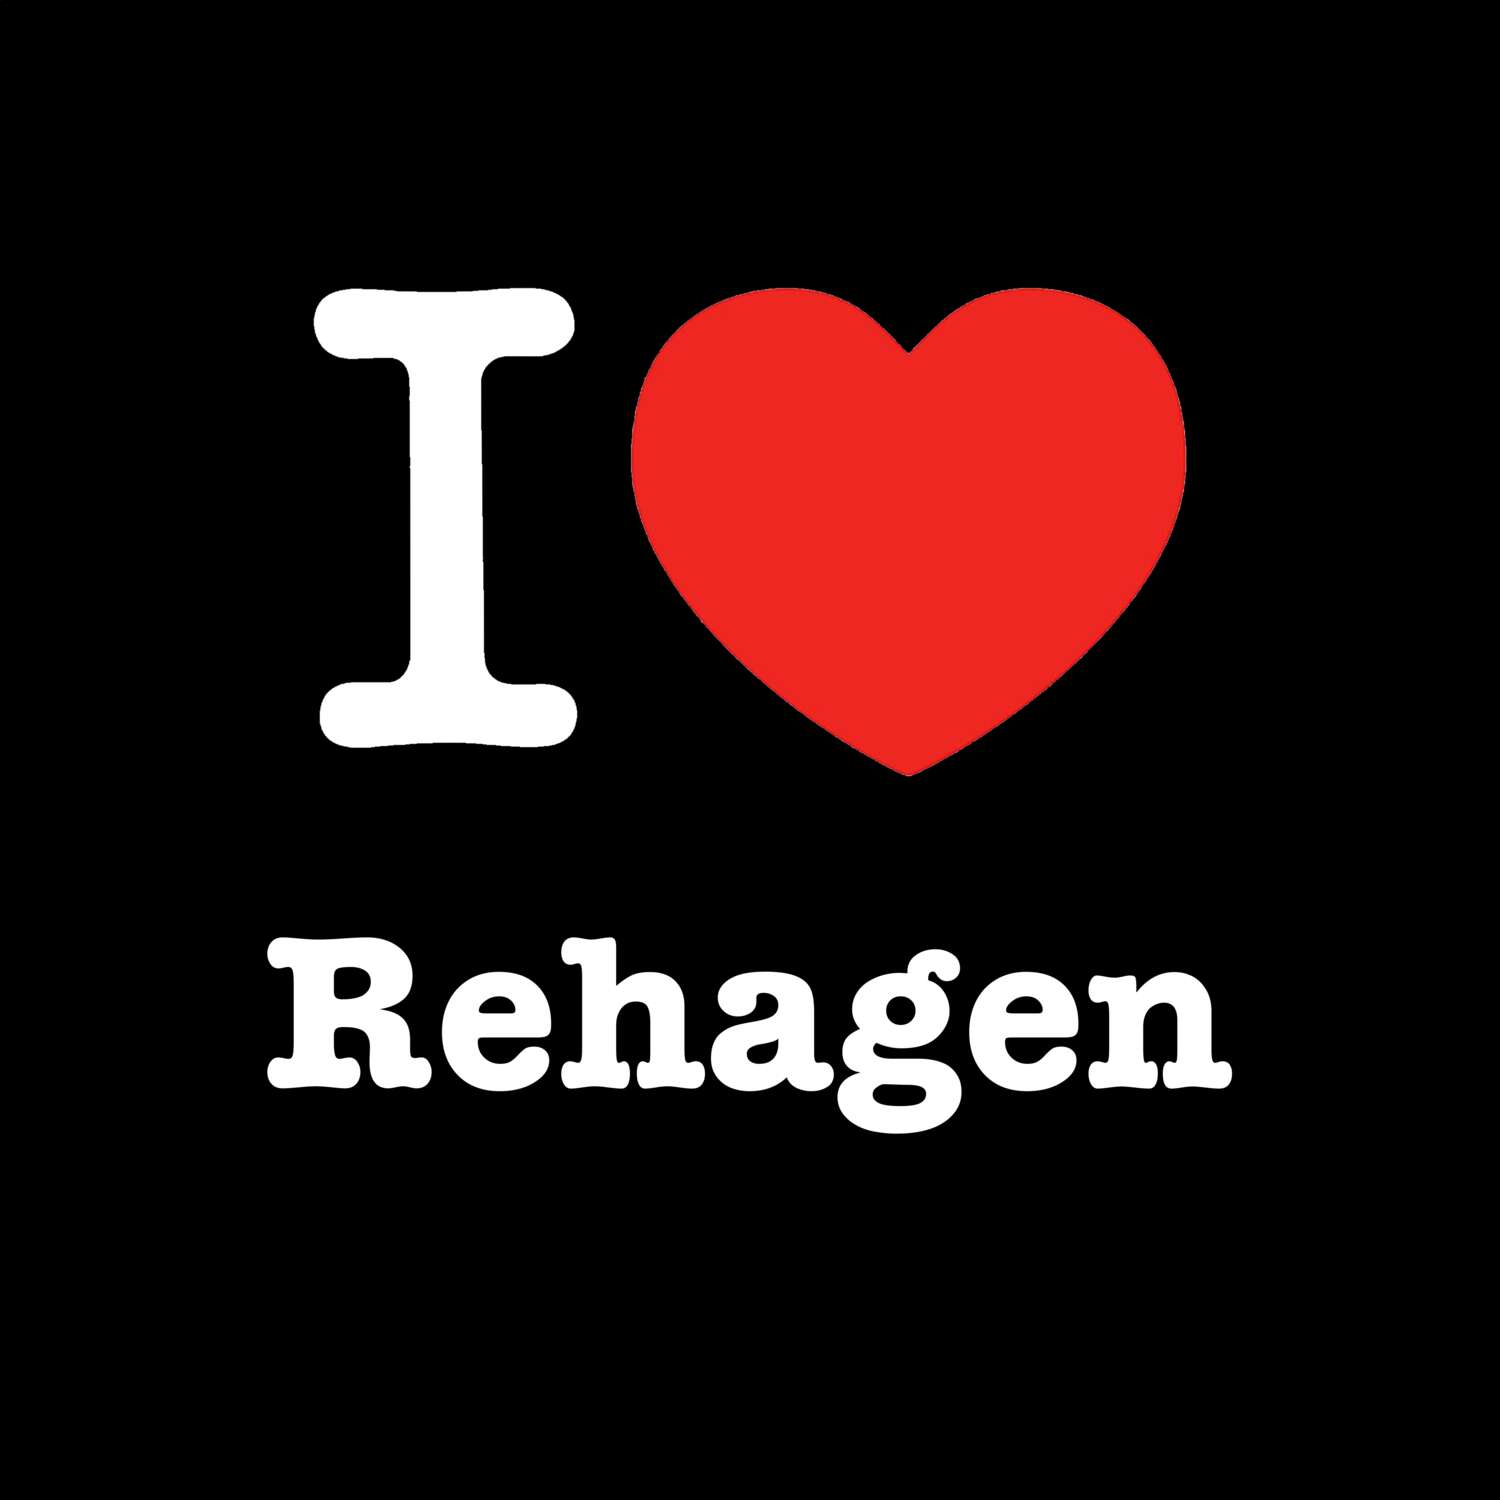 Rehagen T-Shirt »I love«